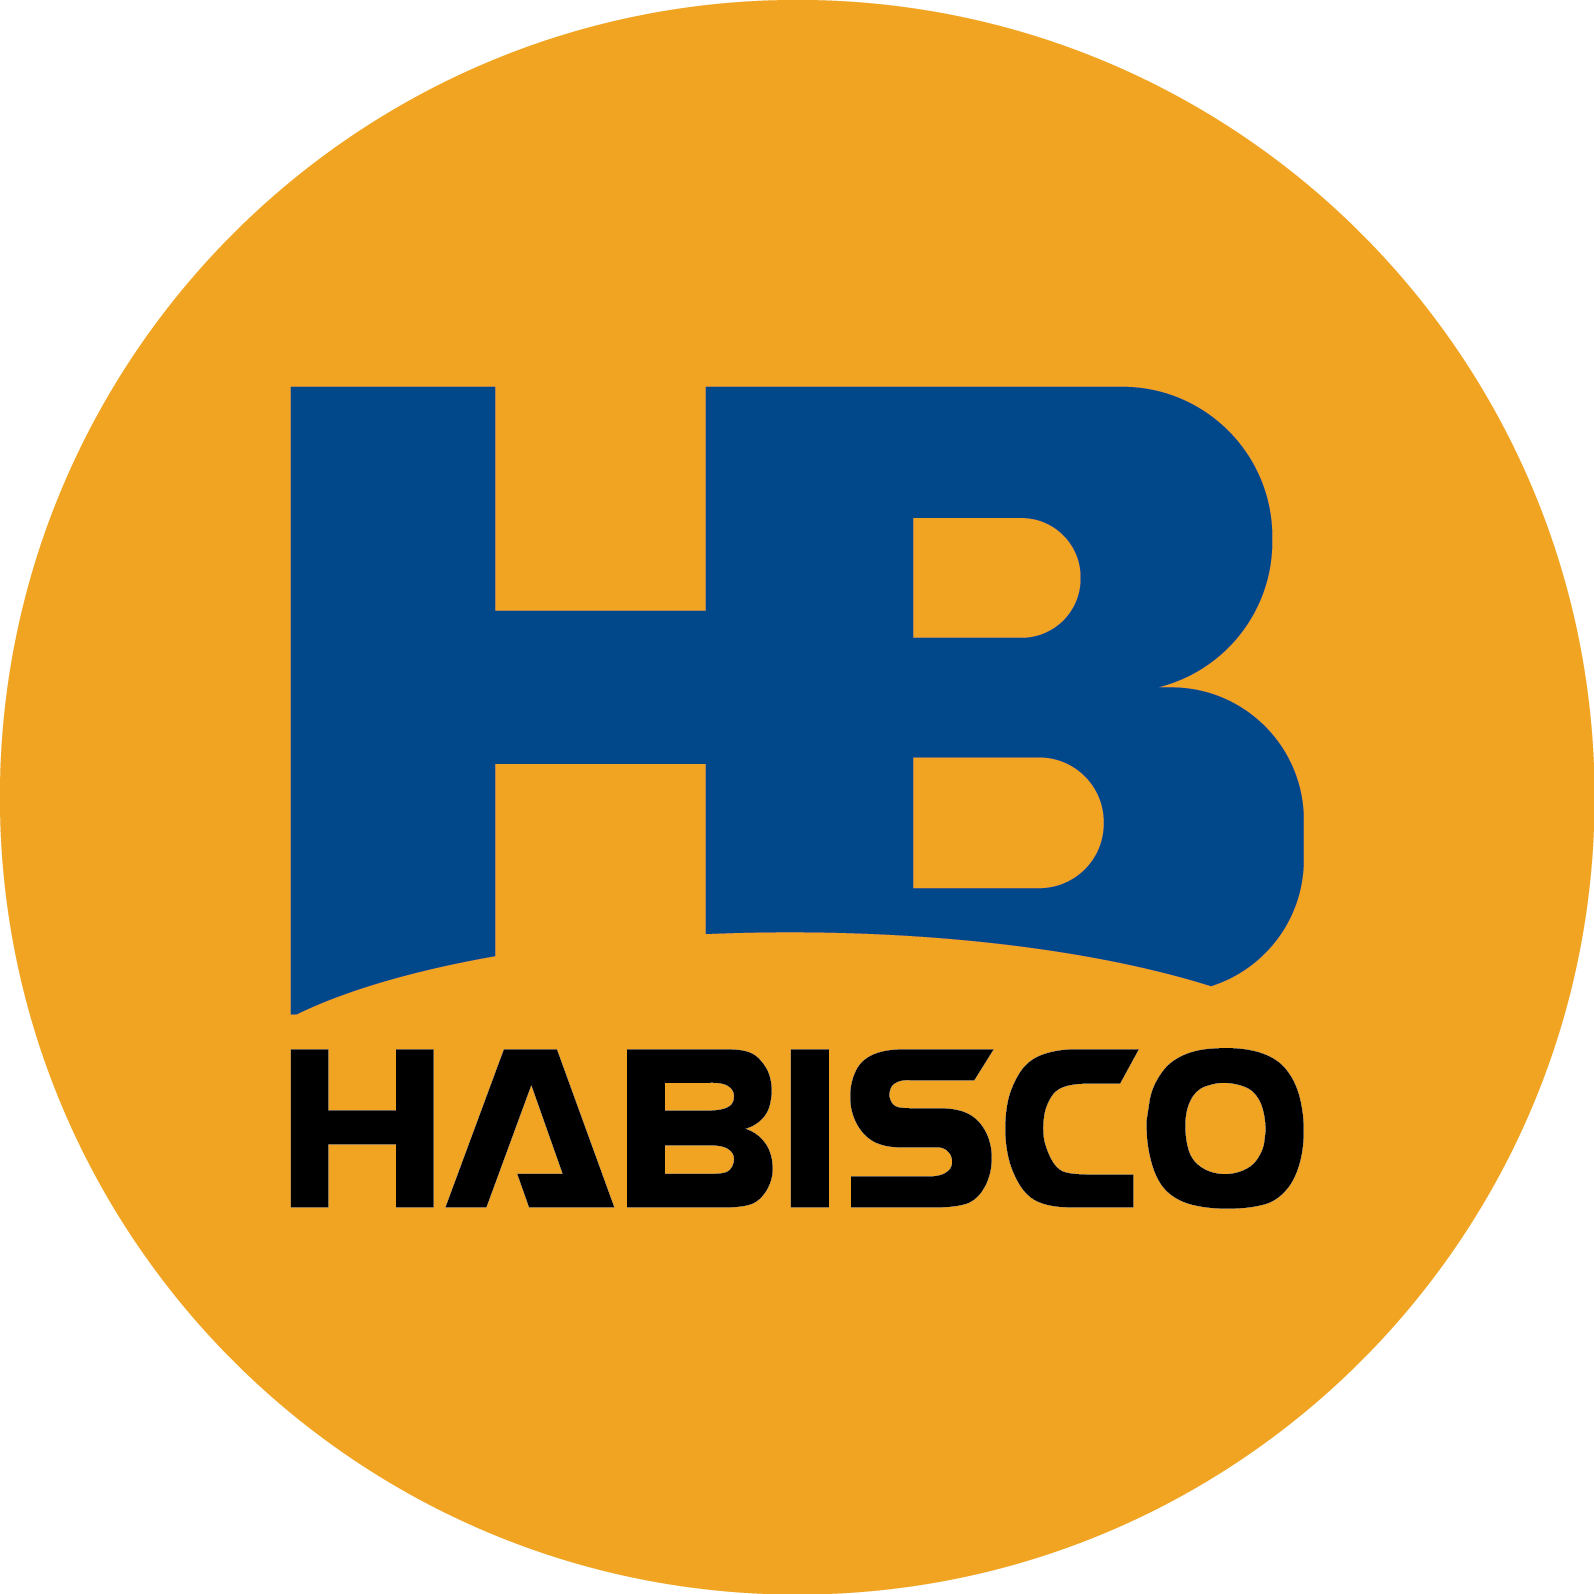 Habisco Corporation